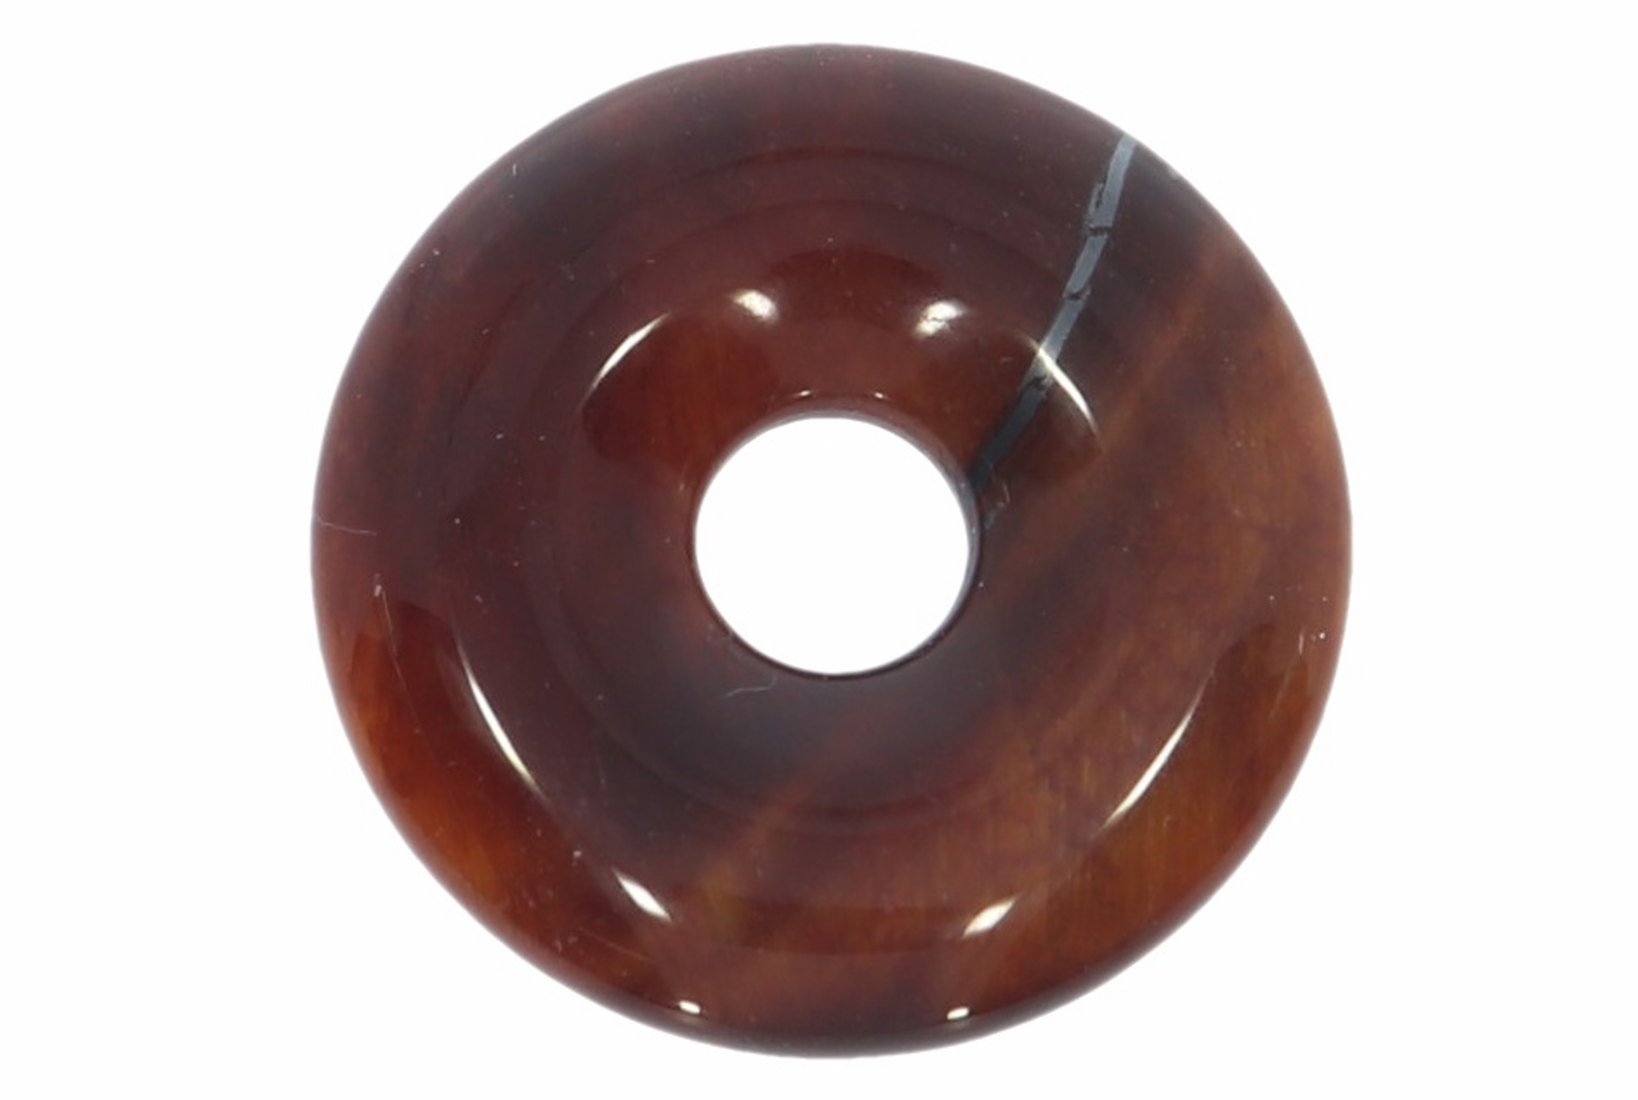 Tigerauge rot Donut Schmuck Anhänger 20mm & Donut Halter Silber HS1597